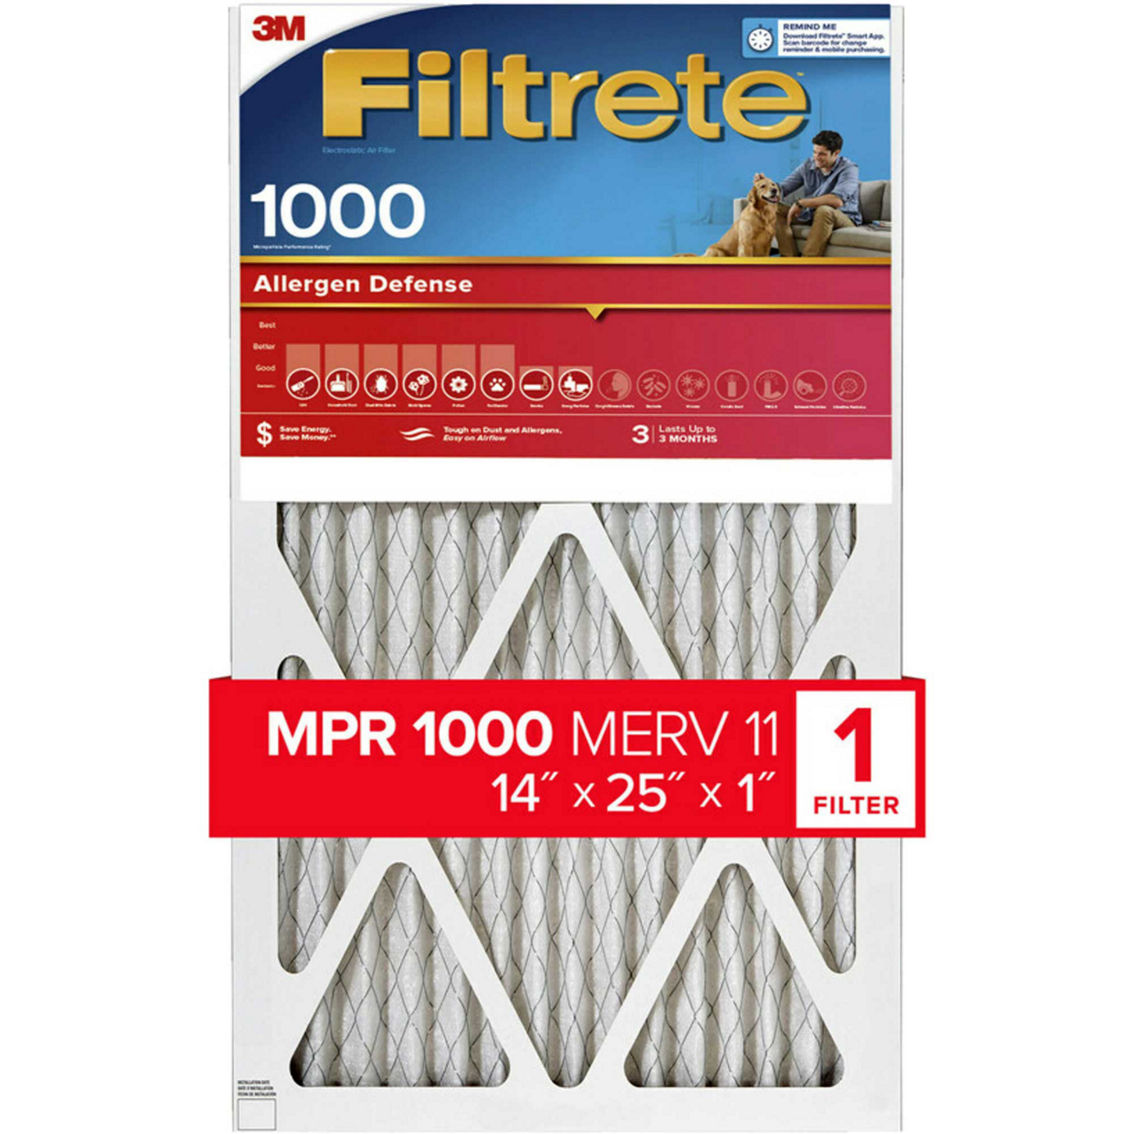 Filtrete Allergen Defense Air Filter 1000 MPR 14 x 25 x 1 in. 1 pk.